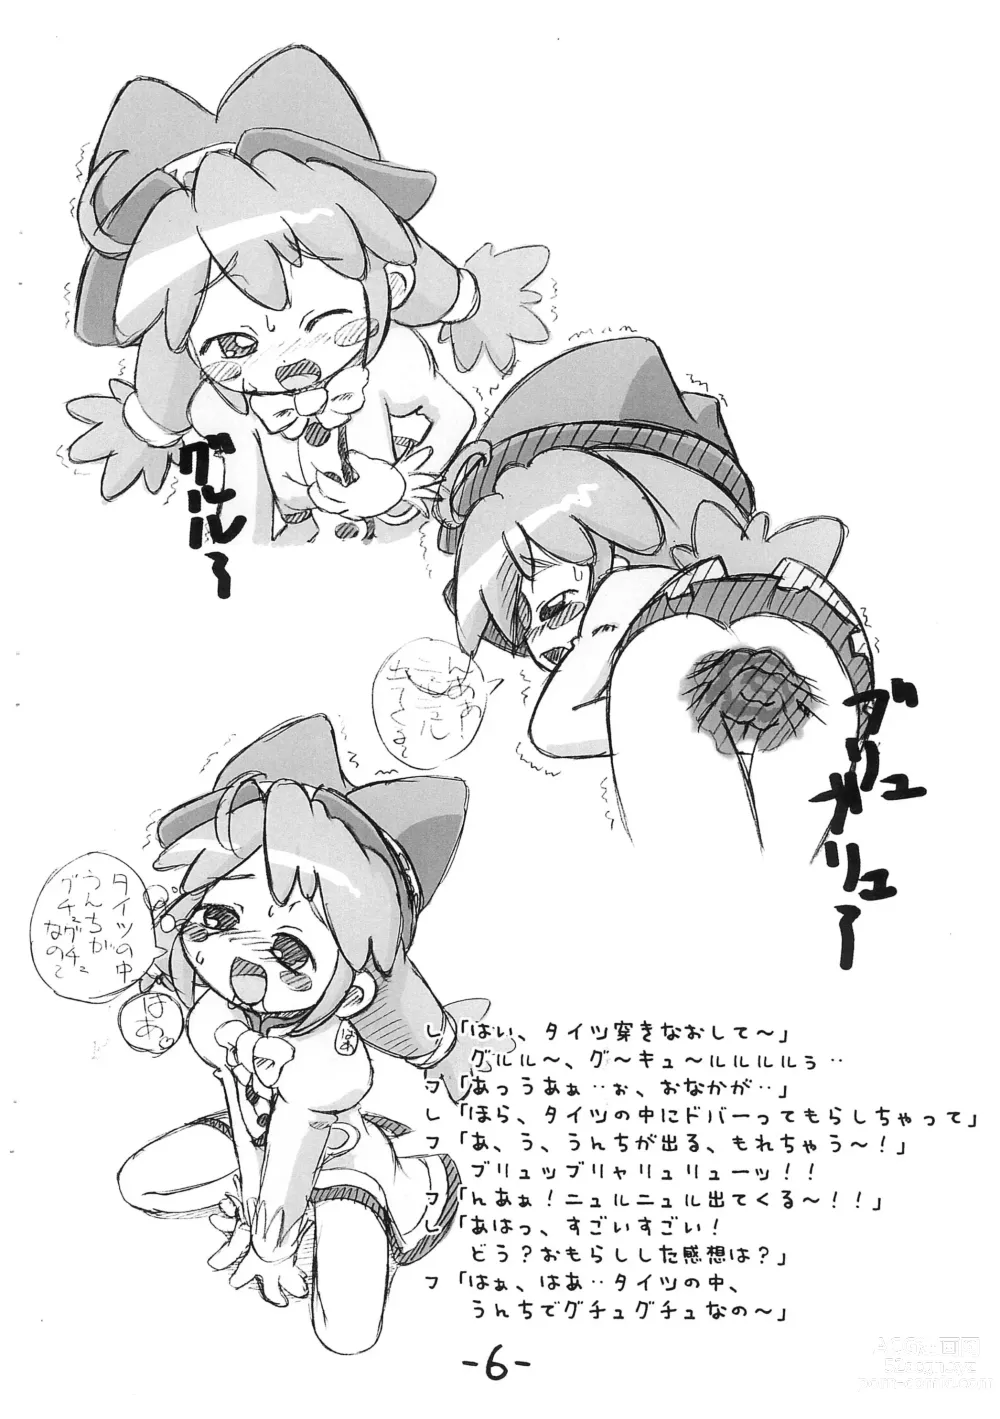 Page 6 of doujinshi Futago Hime Unun-bon